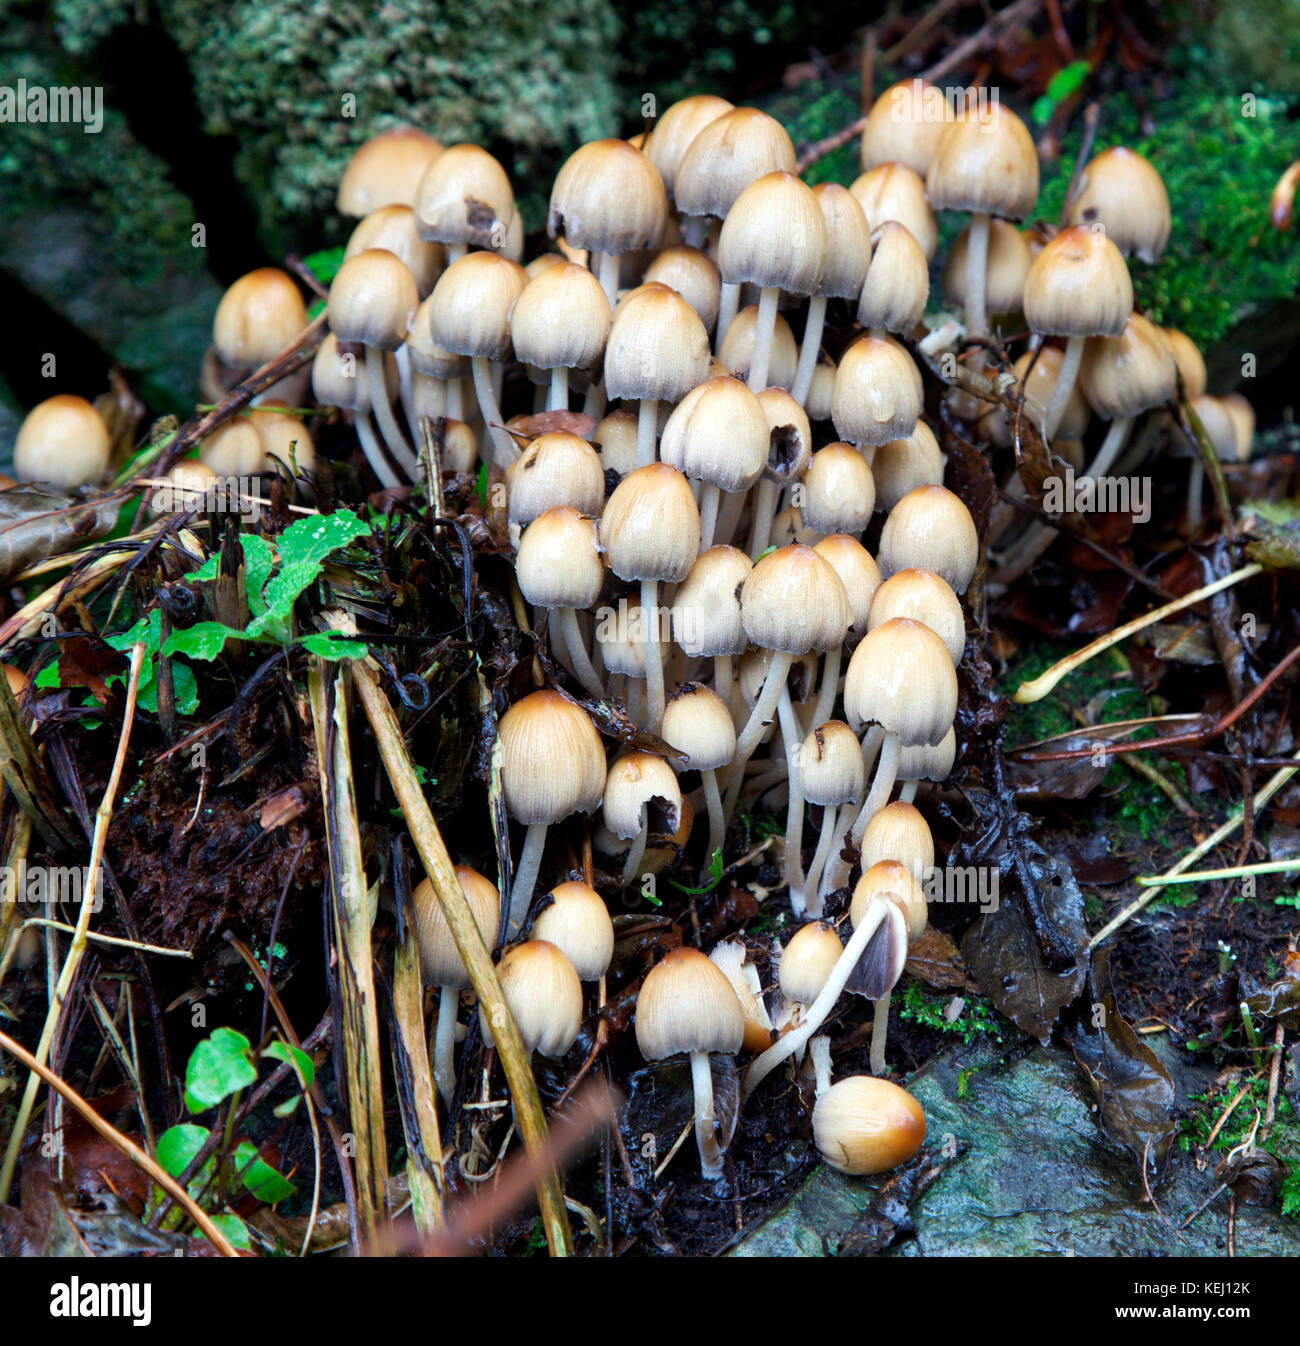 Coprinellies micaceus, edidble fungi growing in an Irish tree Stock Photo